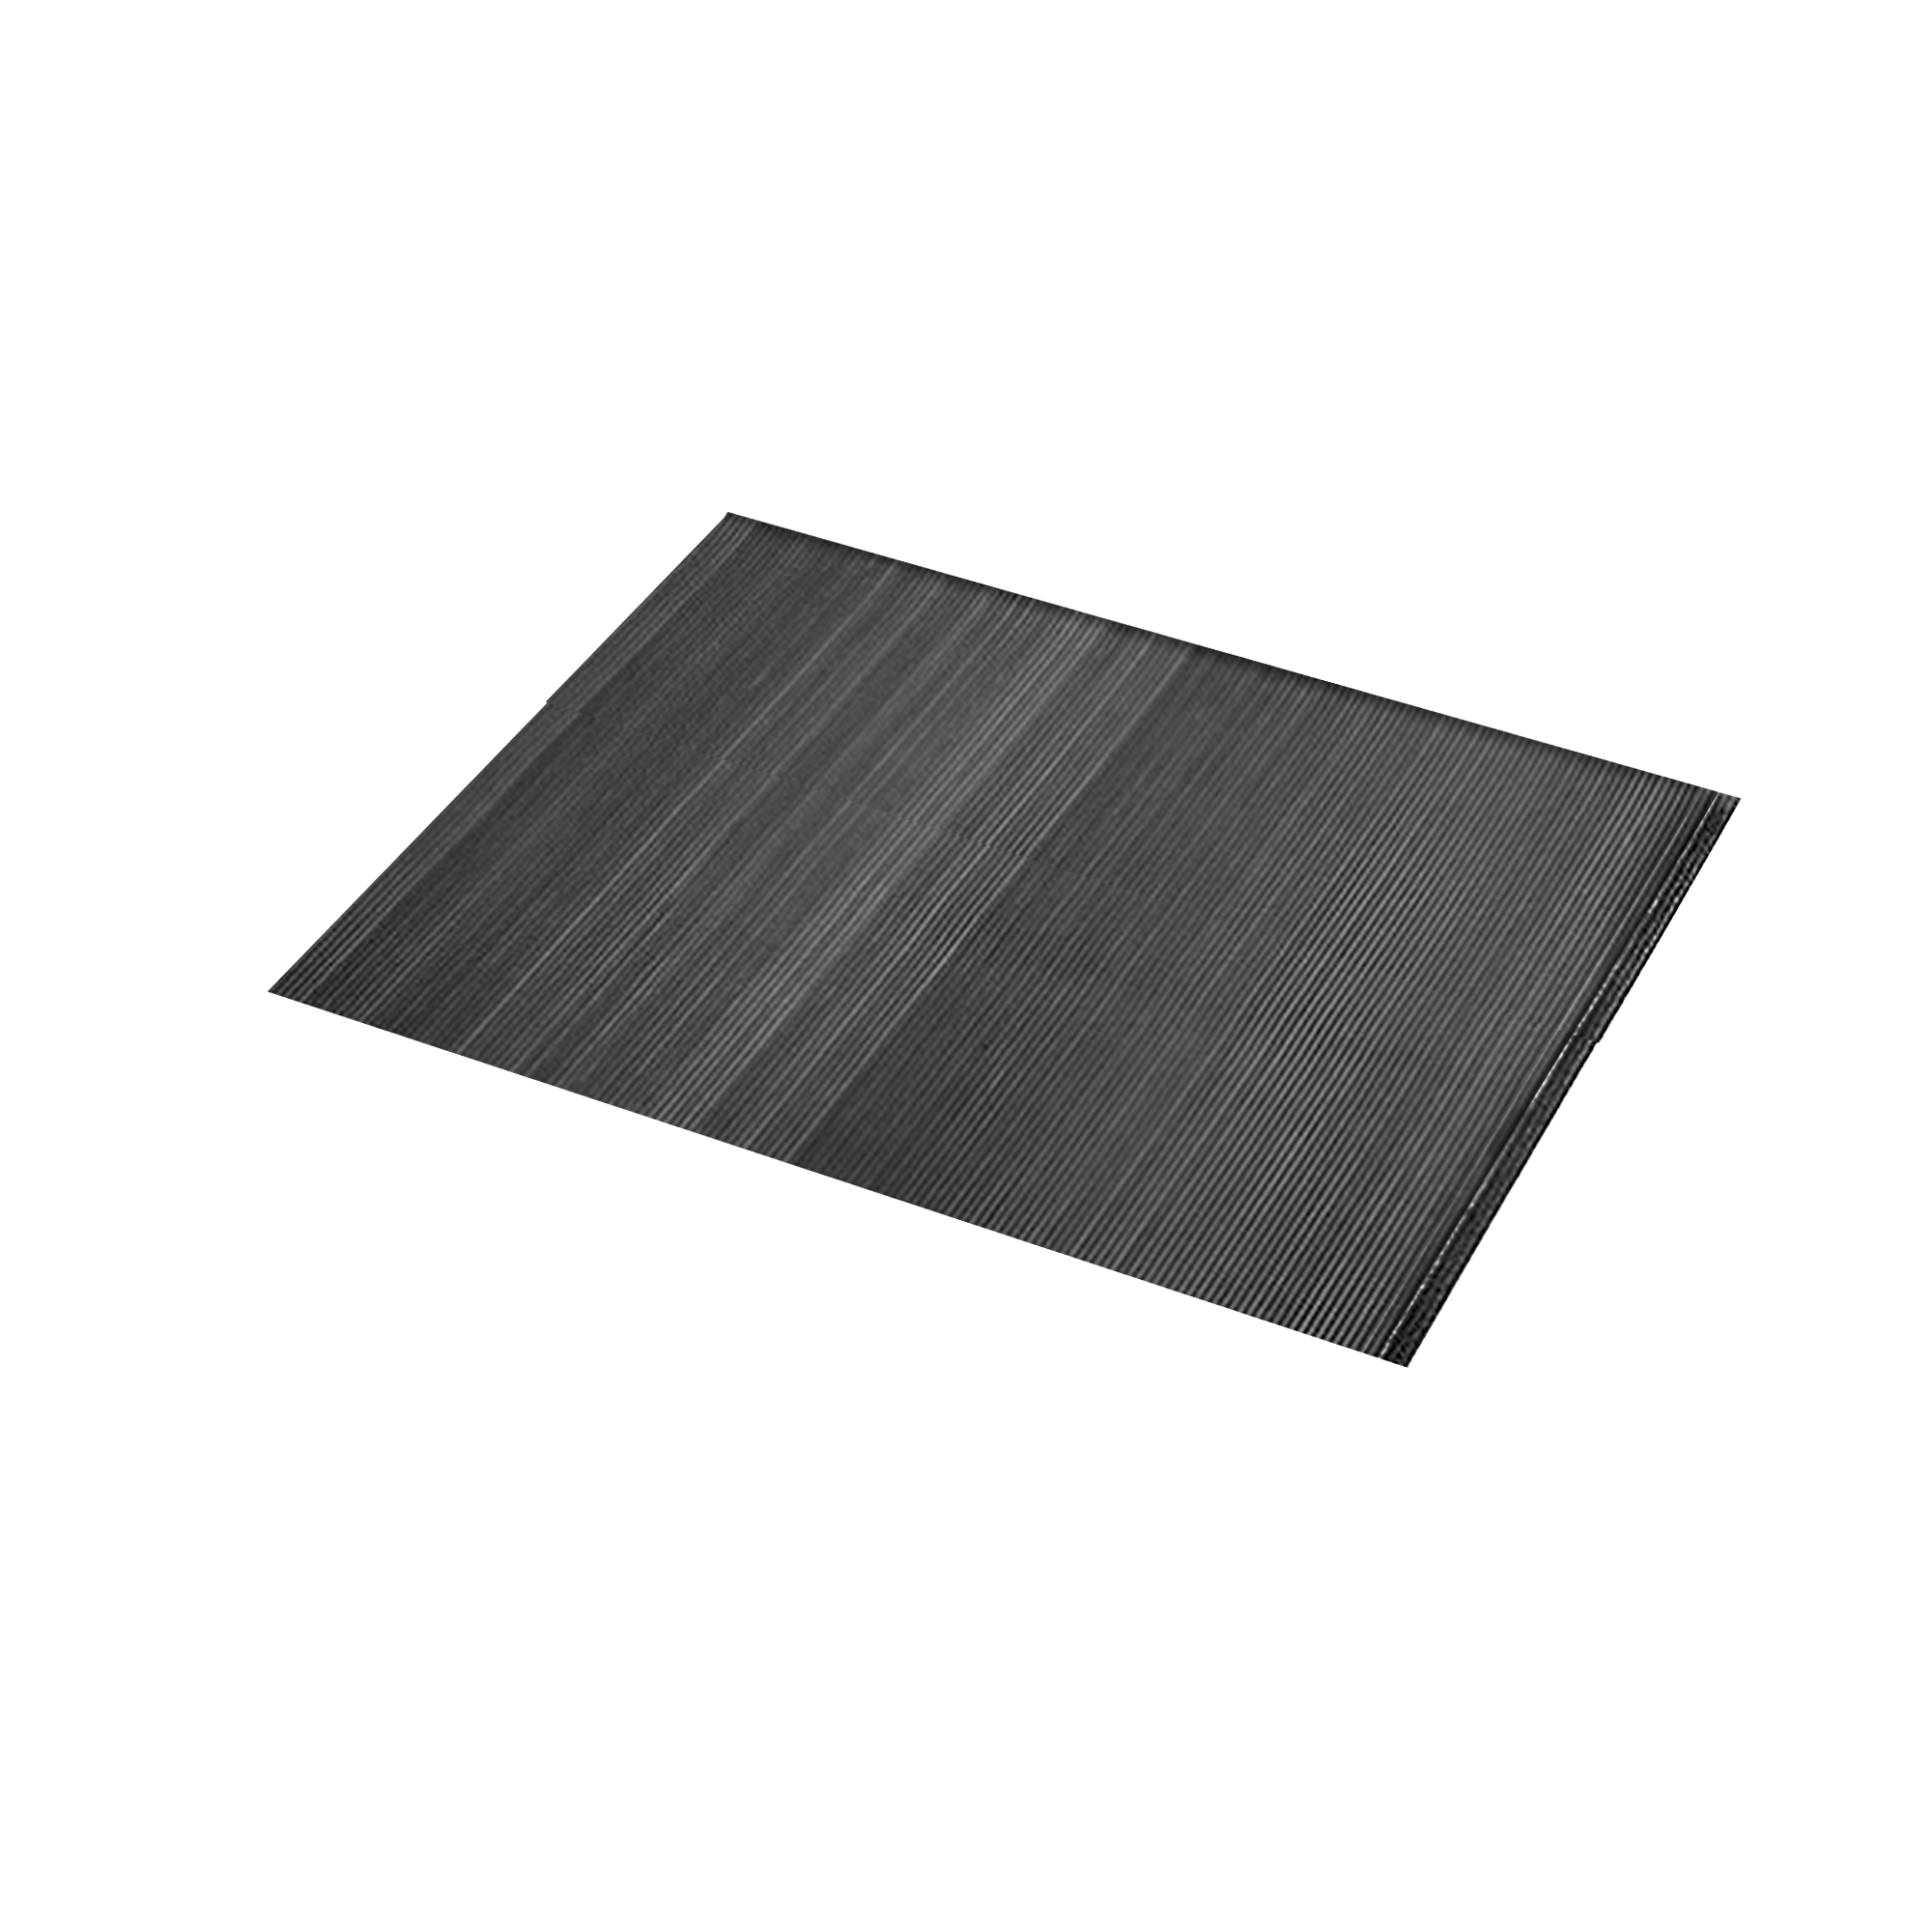 Feinriefenmatte, verschleißfeste Werkbankmatte 1000 x 1000 mm